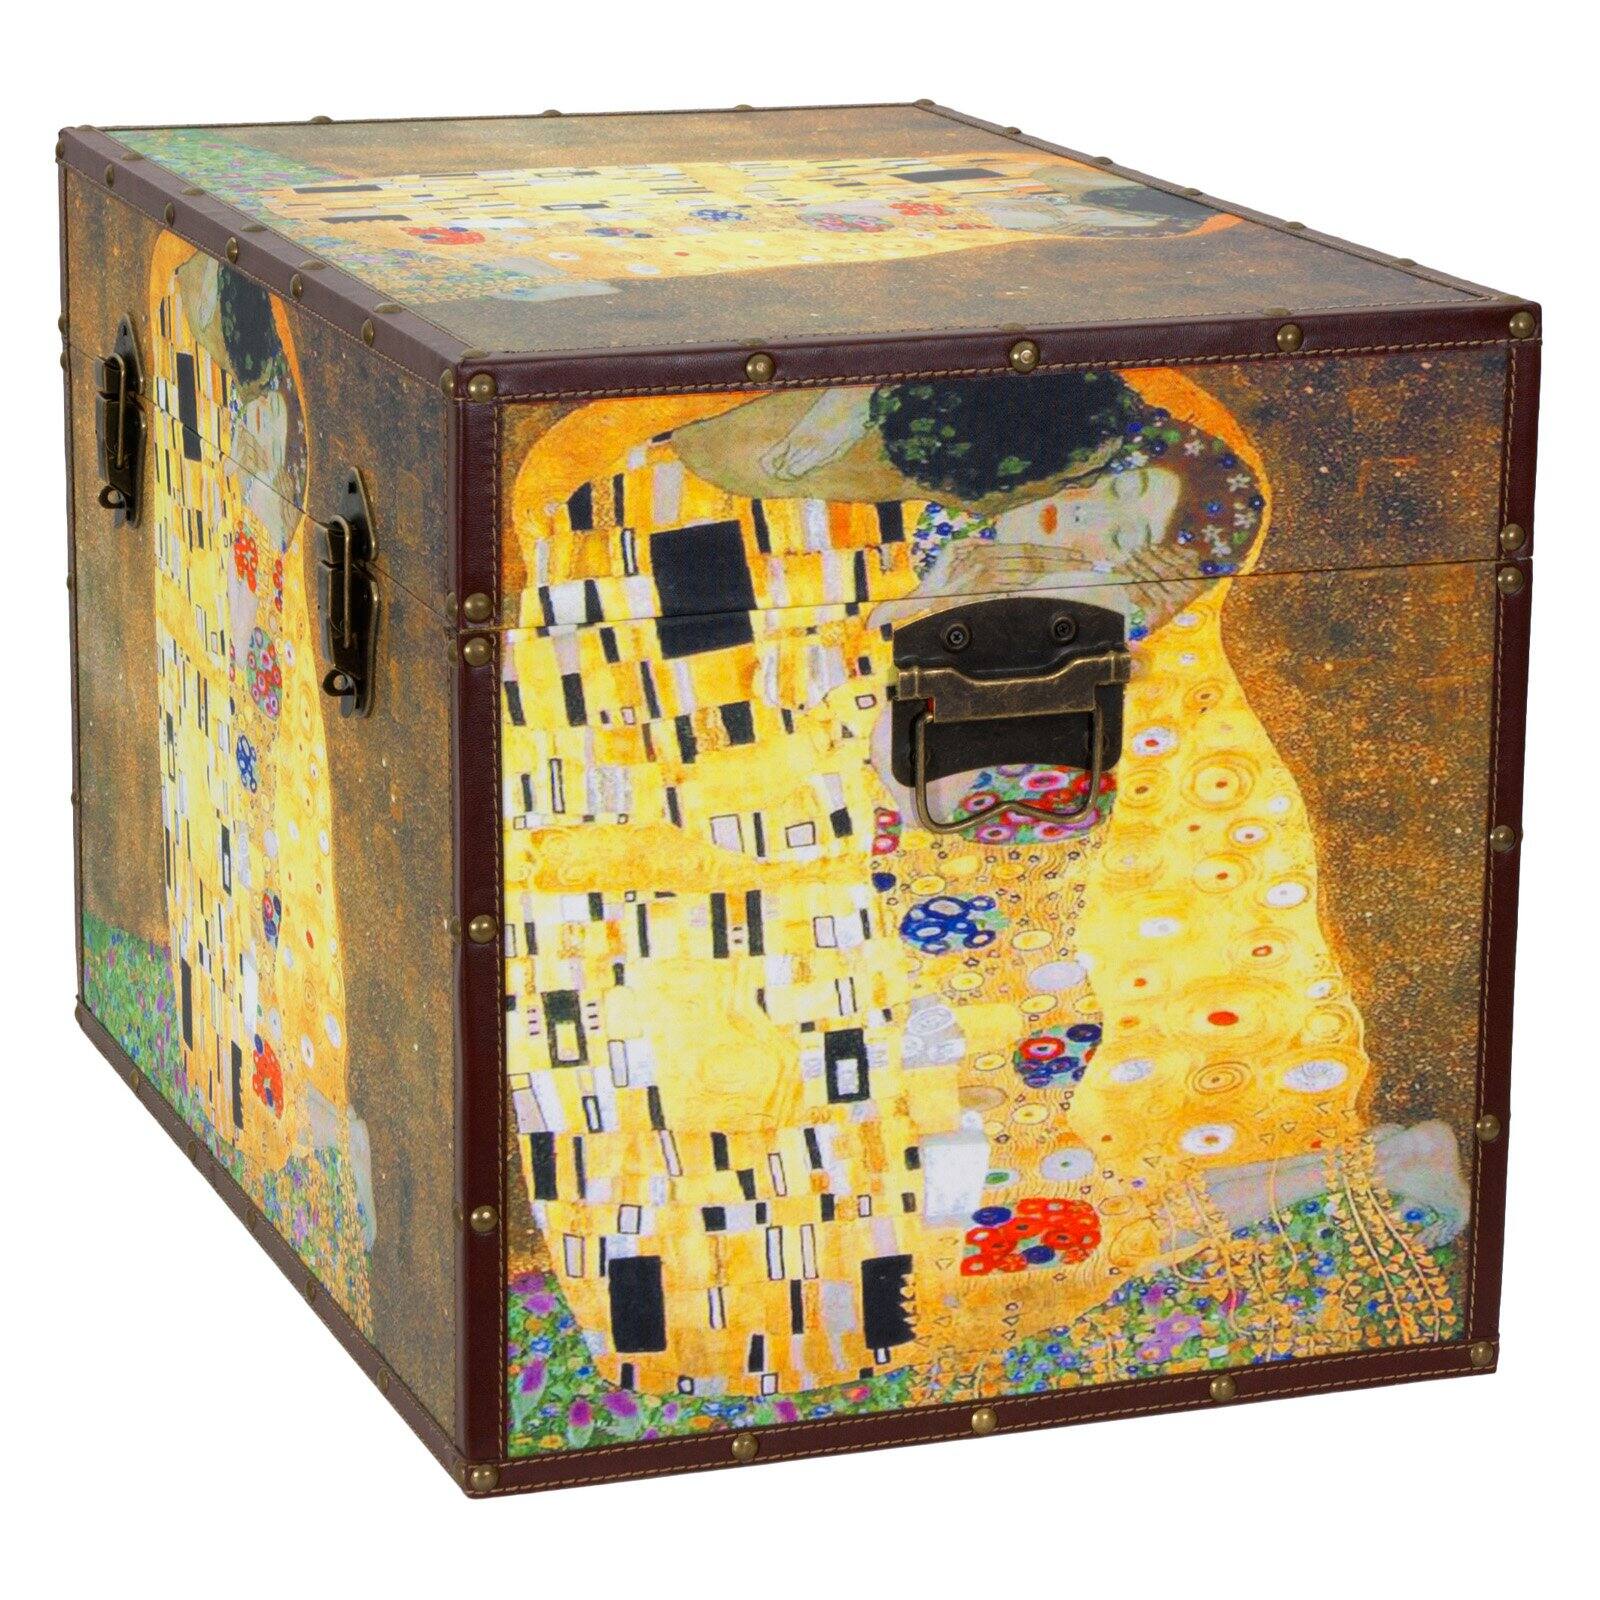 Oriental Furniture Works of Klimt Trunk - image 3 of 4